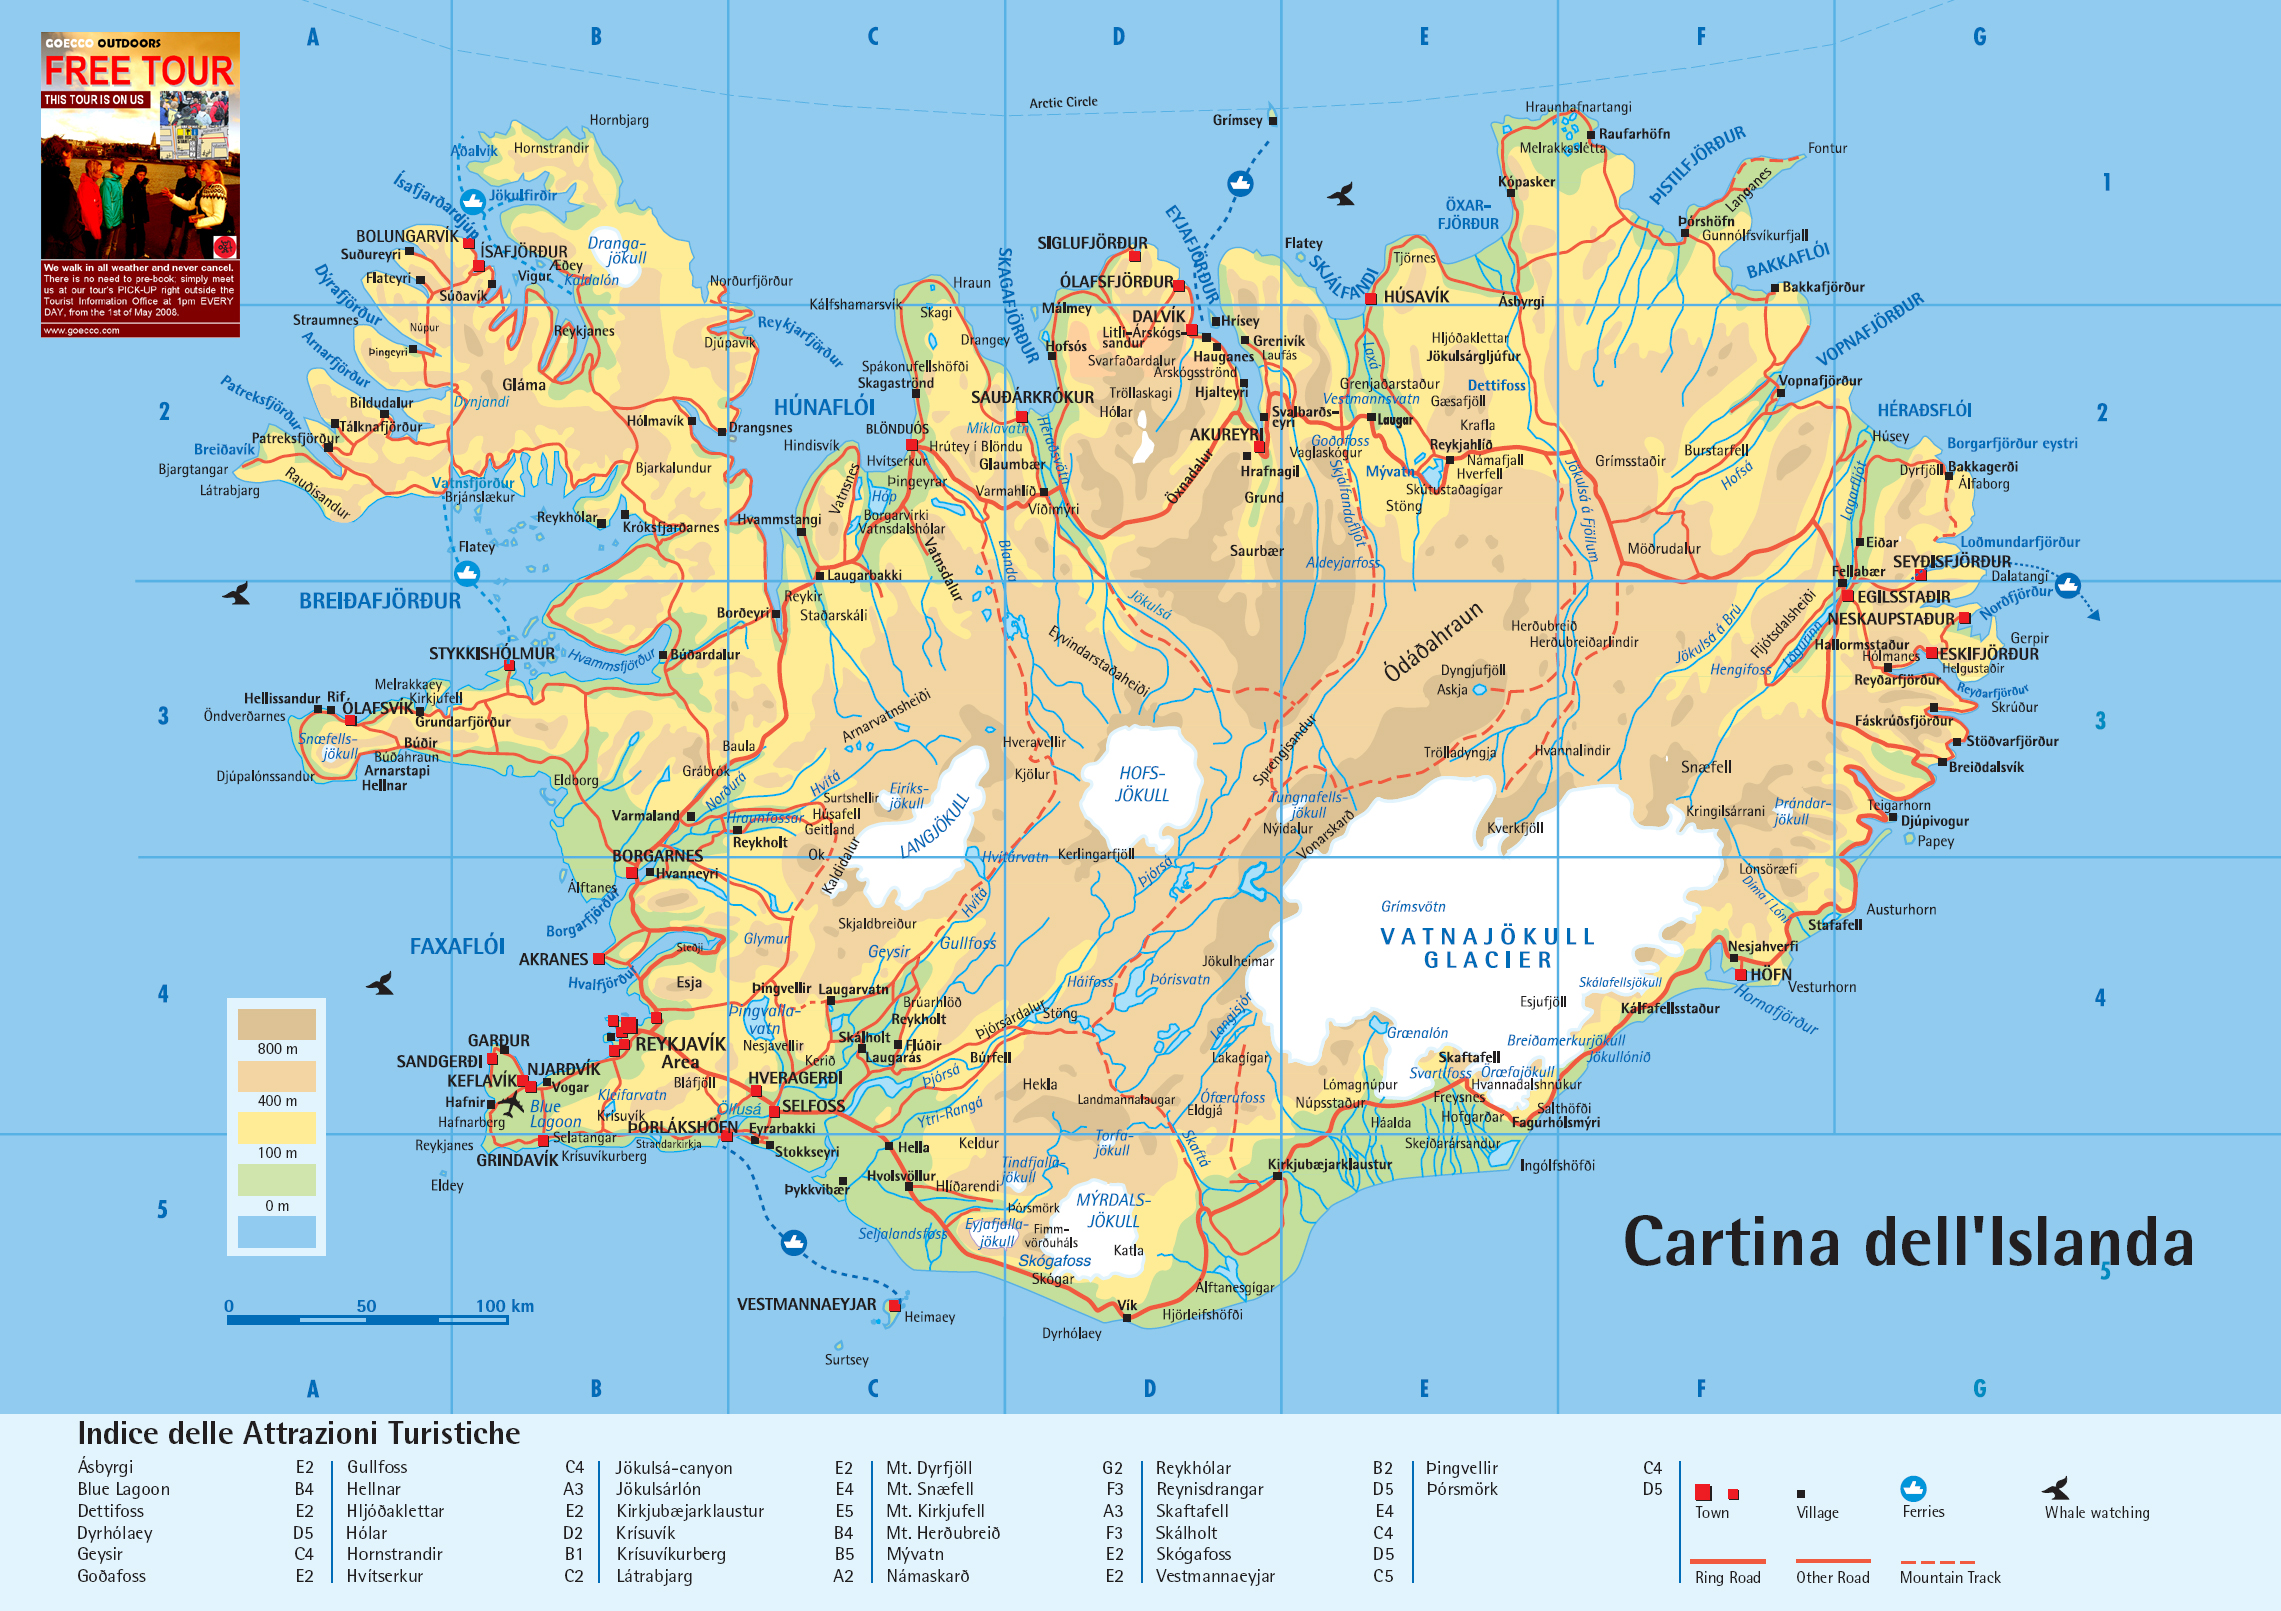 Mappa geografica/turistica dell'Islanda